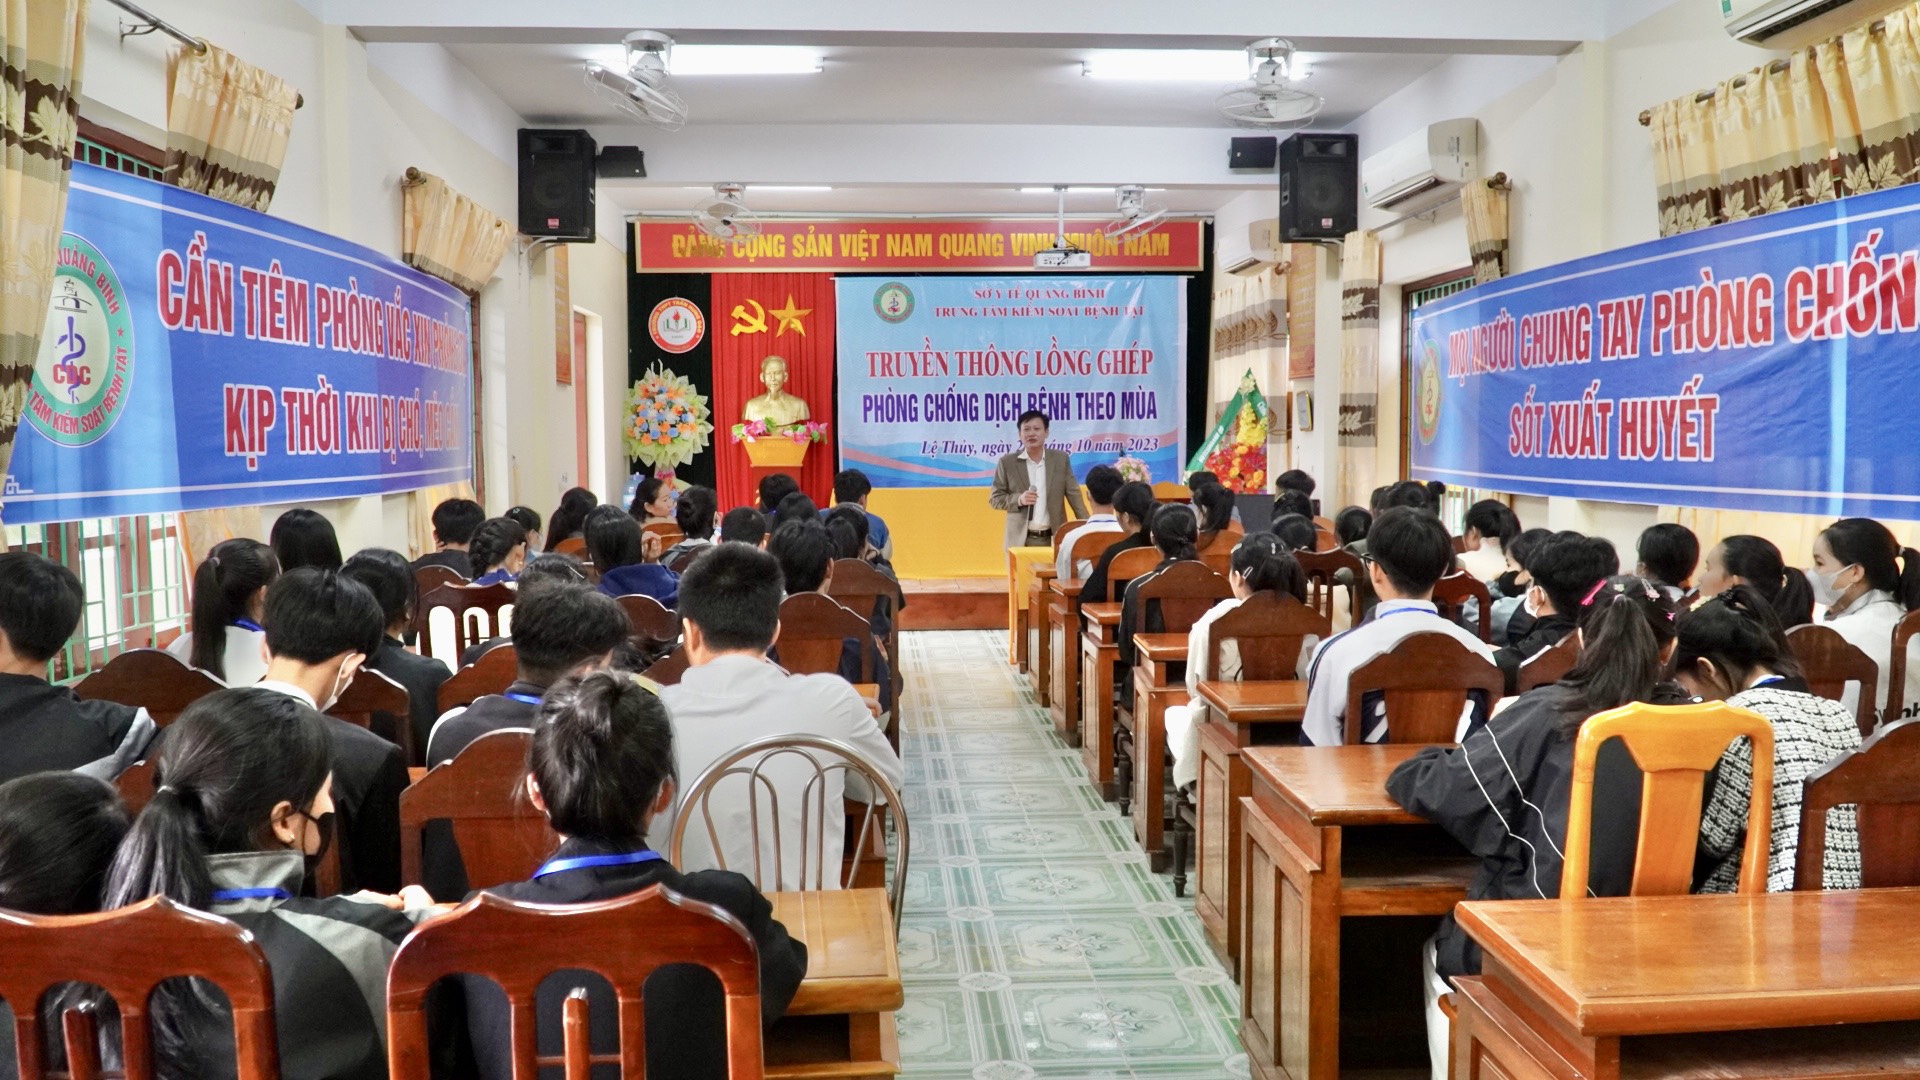 Buổi truyền thông về công tác phòng chống dịch bệnh tại trường THPT Trần Hưng Đạo nhận được sự quan tâm của giáo viên và học sinhjpg